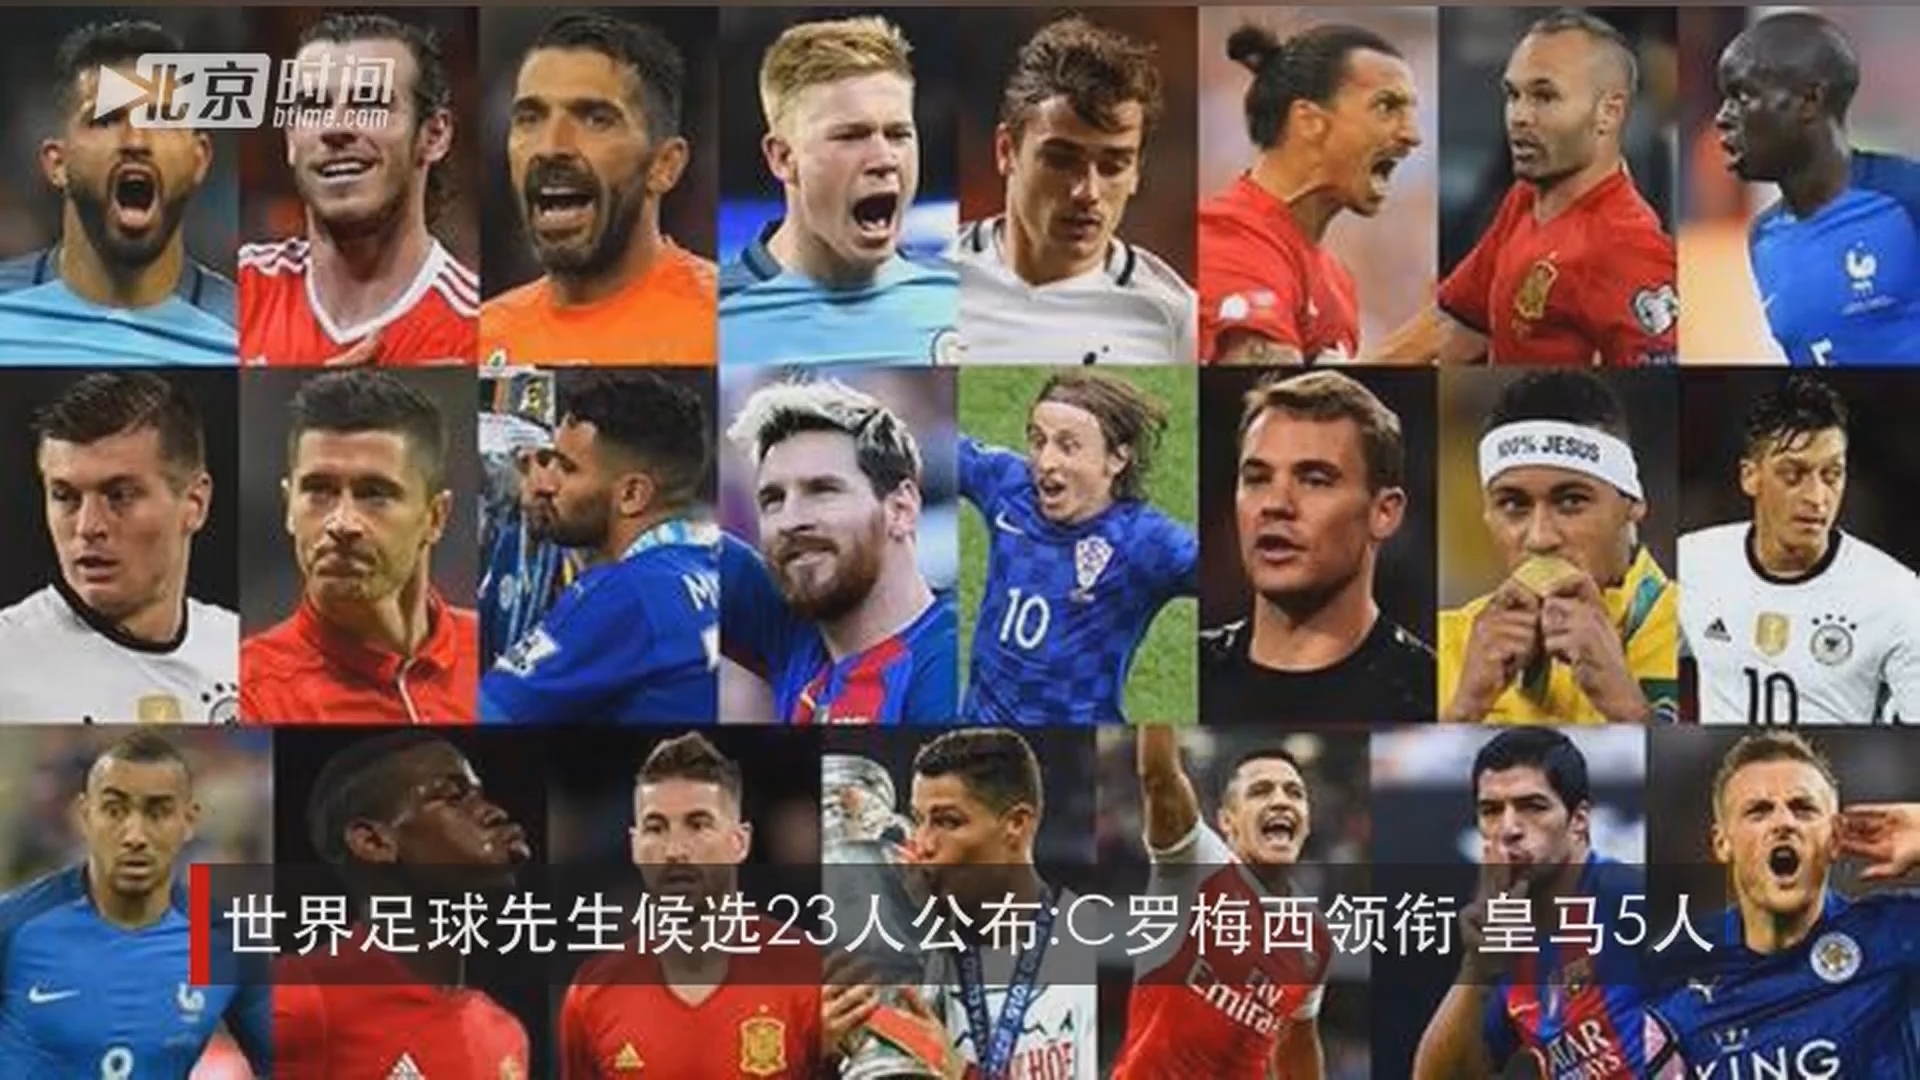 世界足球先生候选23人公布:c罗梅西领衔 皇马5人